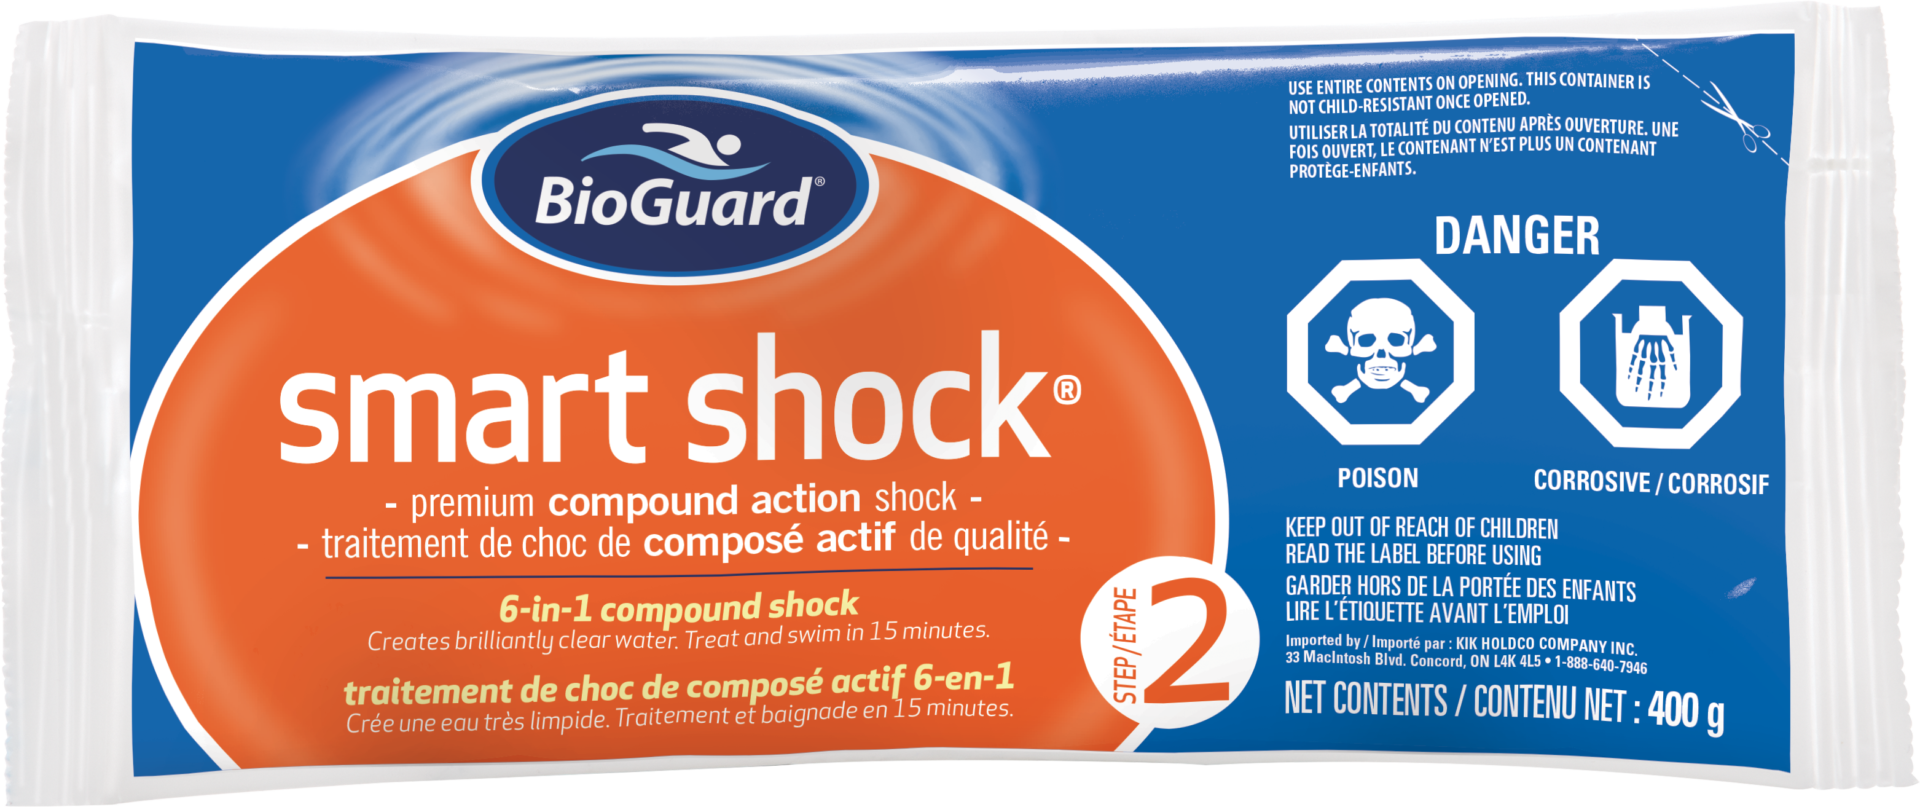 BioGuard Smart Shock 400g - SMART SHOCK - 400g BAGS